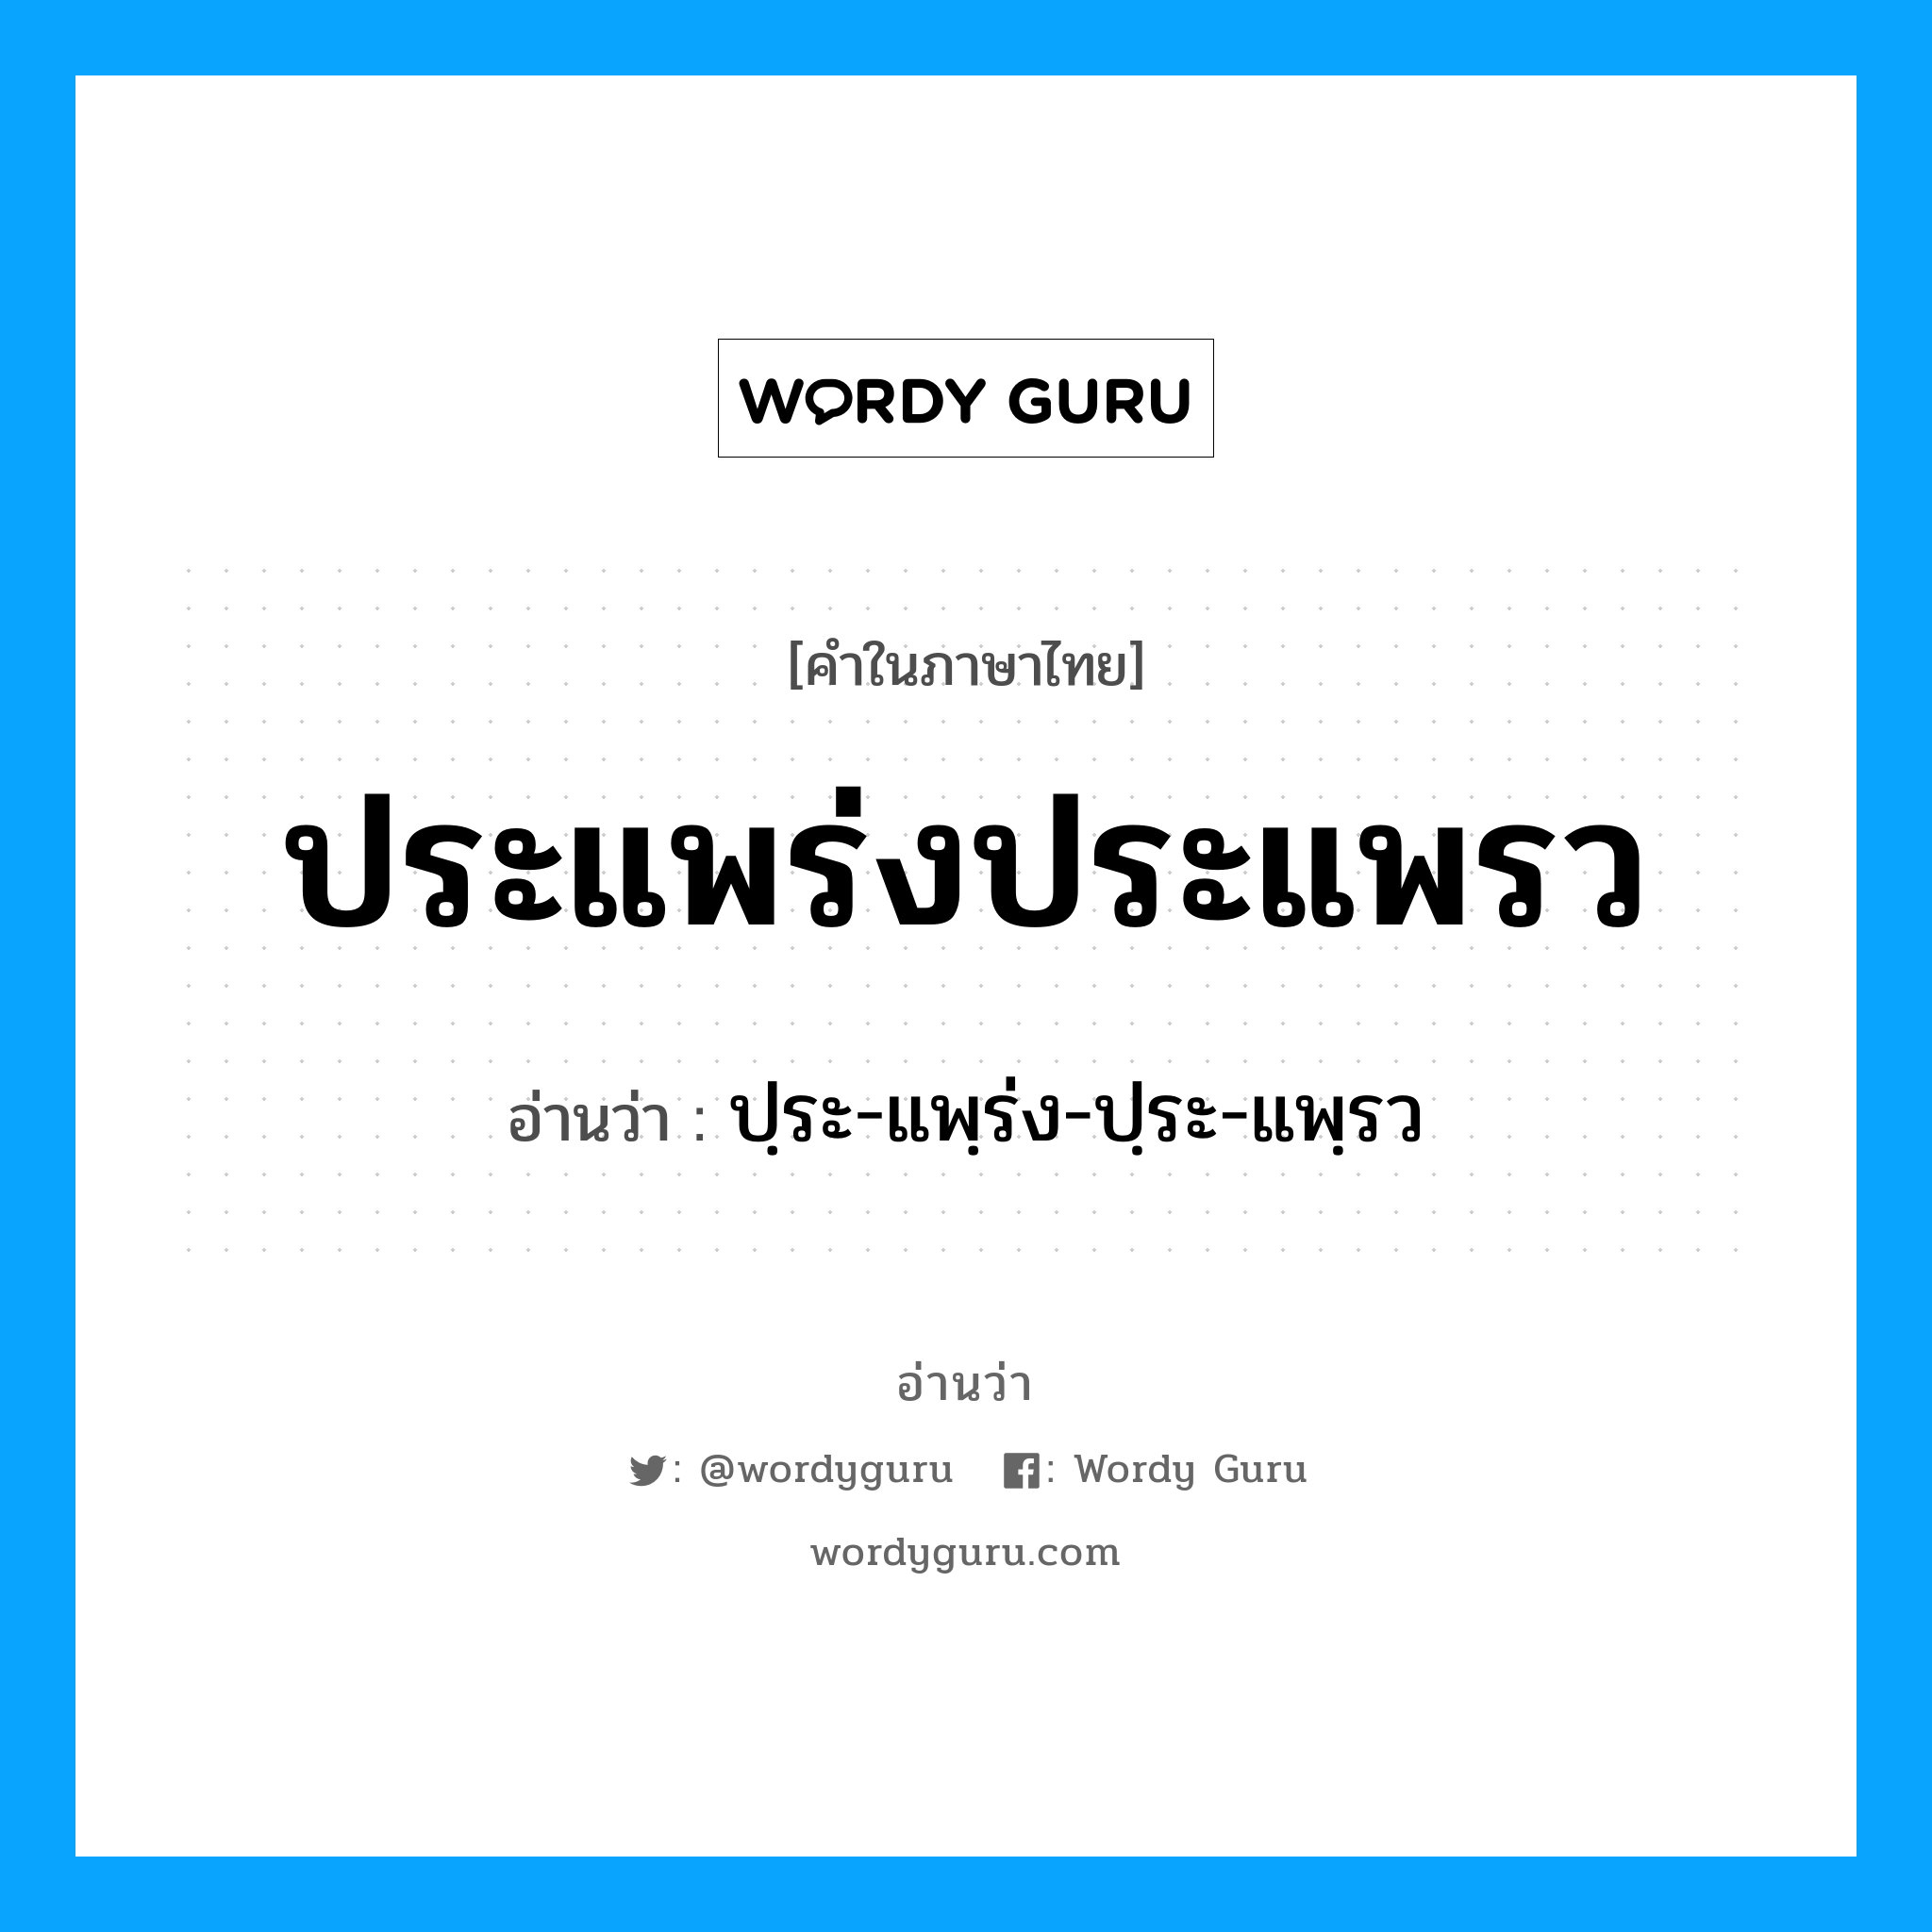 ปฺระ-แพฺร่ง-ปฺระ-แพฺรว เป็นคำอ่านของคำไหน?, คำในภาษาไทย ปฺระ-แพฺร่ง-ปฺระ-แพฺรว อ่านว่า ประแพร่งประแพรว